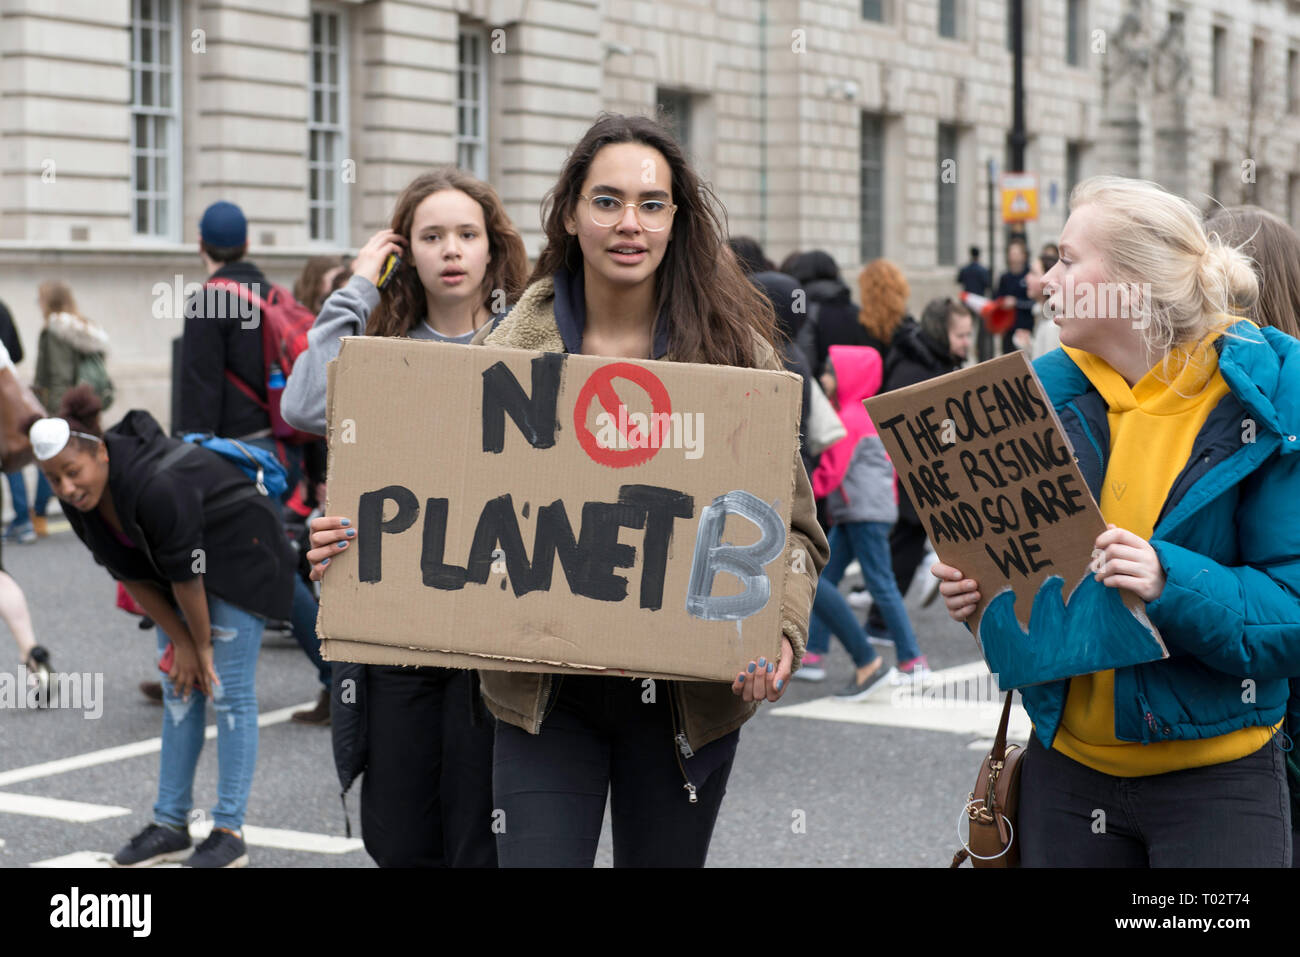 Jugendliche sind mit Plakaten während des Protestes gesehen. Hunderte von jungen Menschen im Parlament Platz versammelt, das globale Klima Streik und fordern von der Regierung und der Politiker direkte Aktionen, die zur Bekämpfung des Klimawandels. Studenten in mehr als 100 Ländern waren in den Straßen in einem Klima globale Streik zu beteiligen. Stockfoto